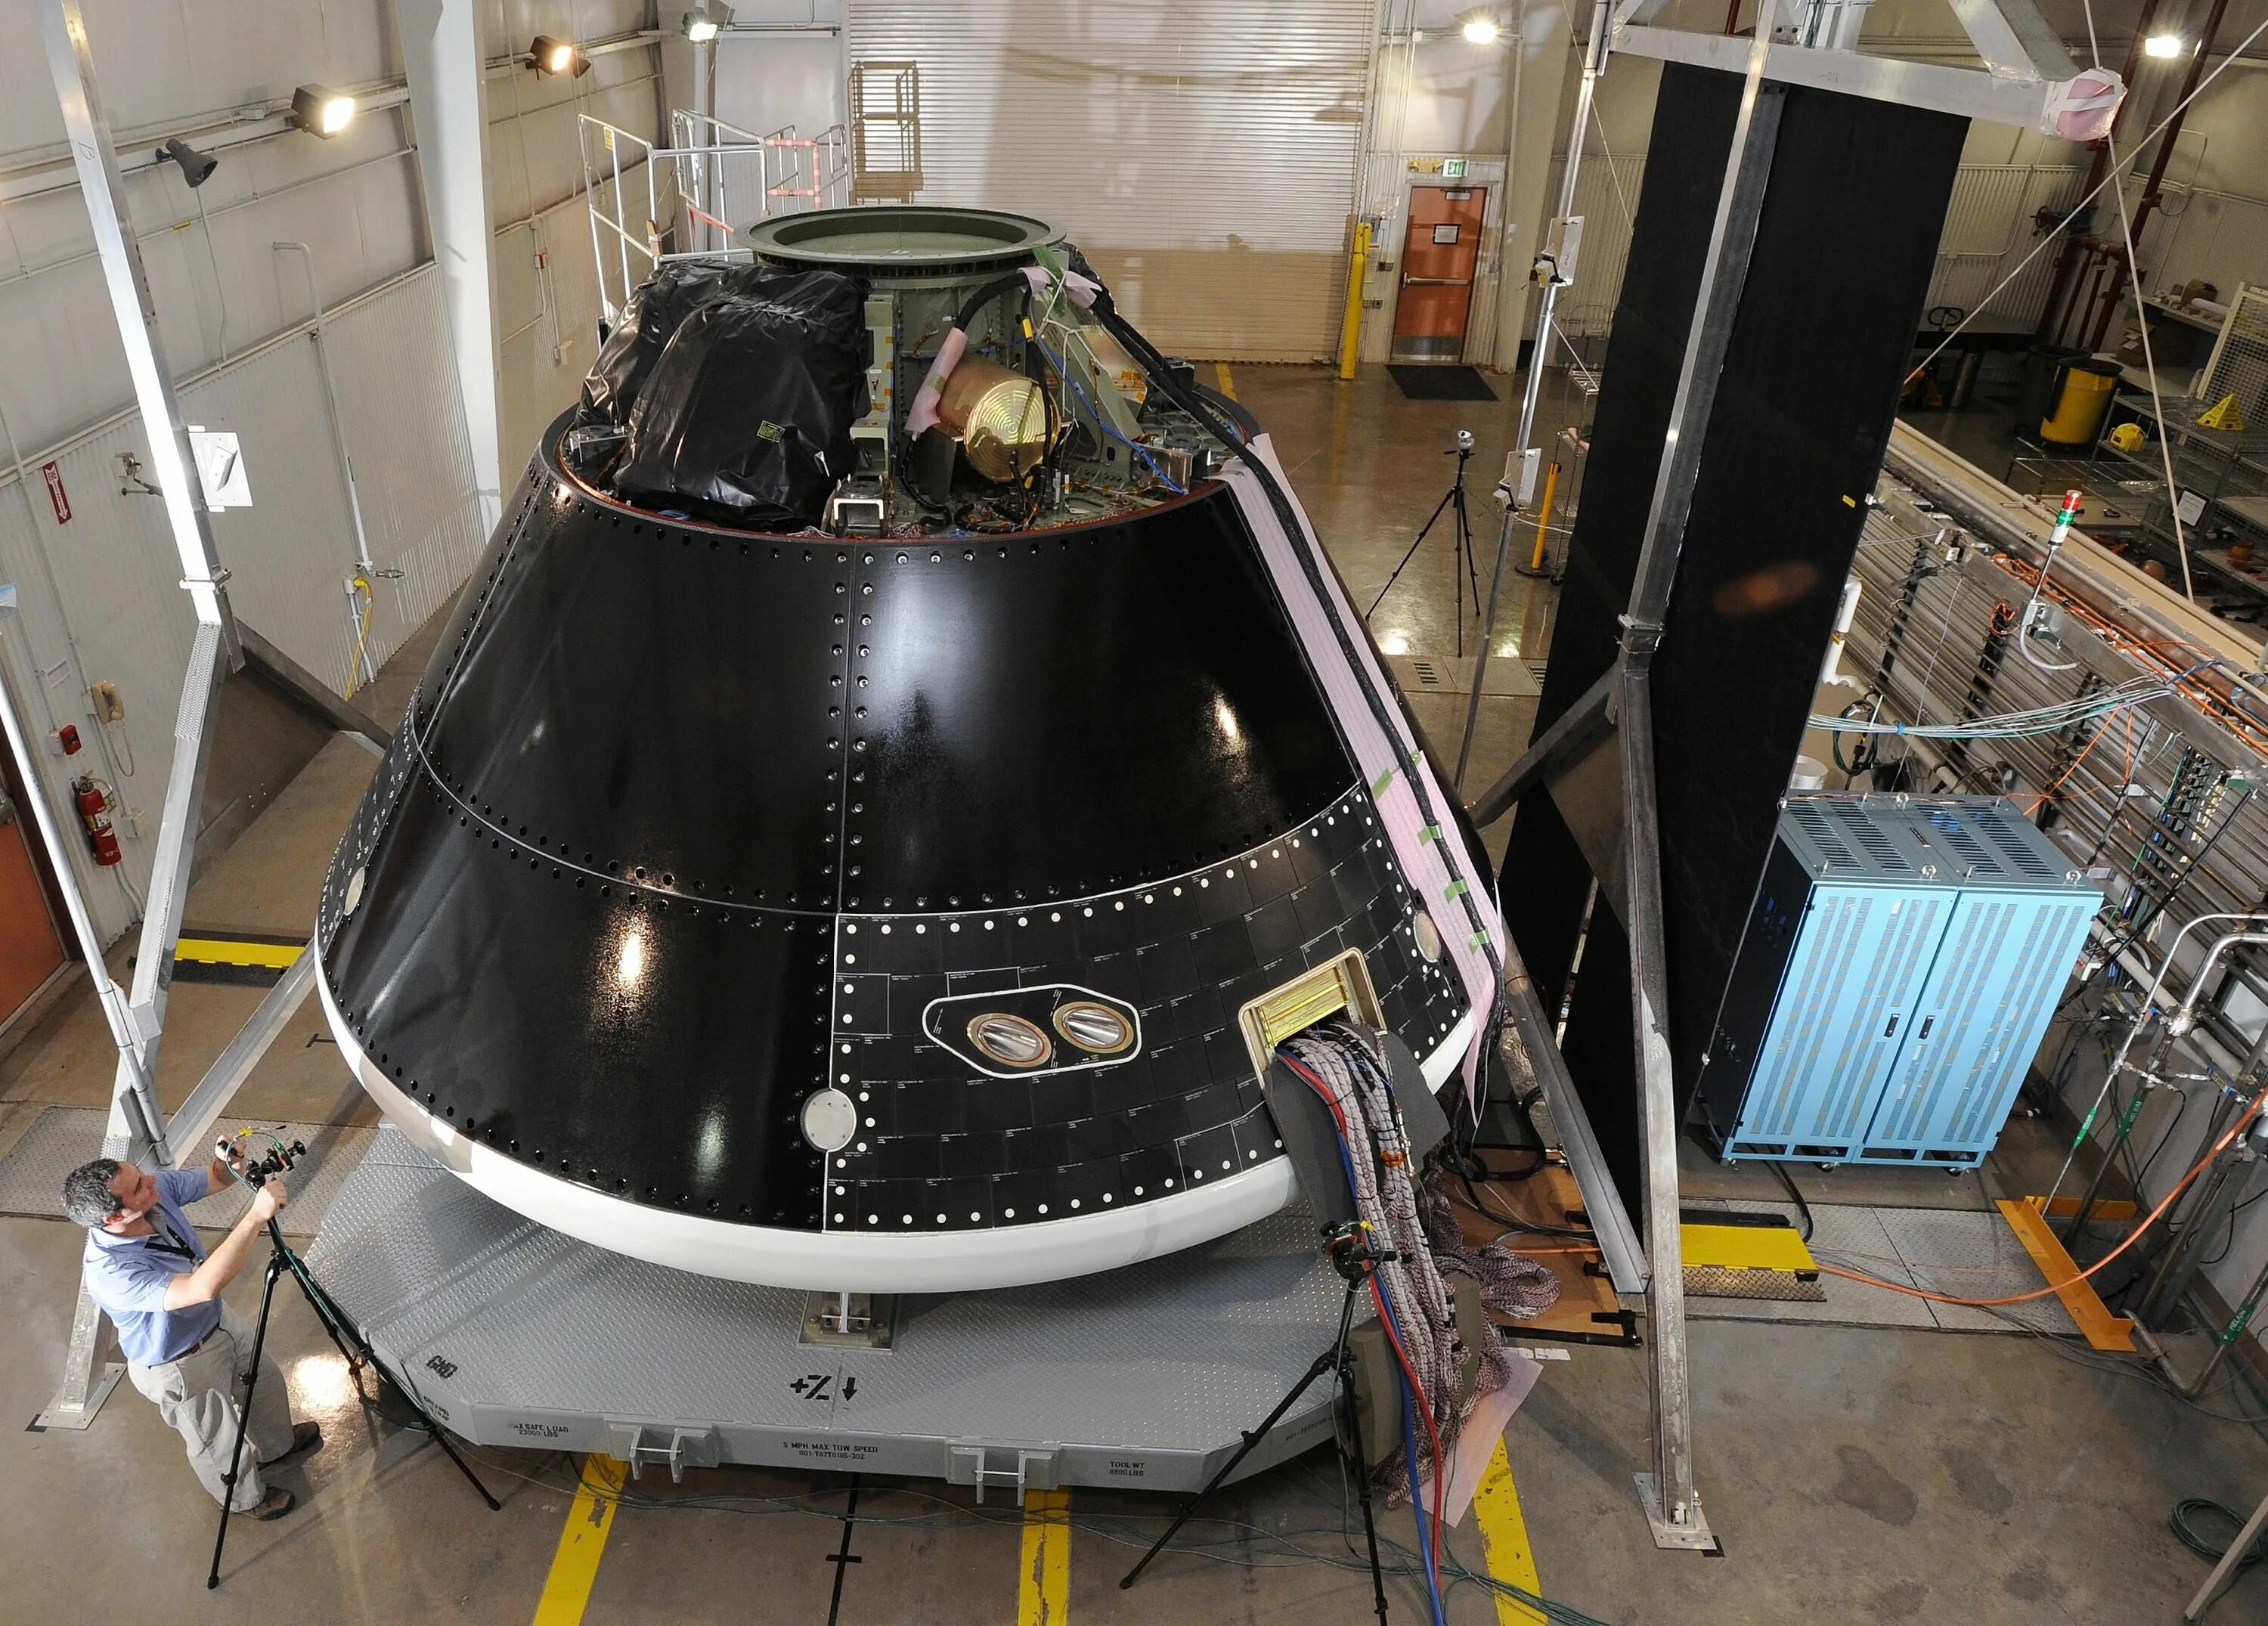 Название пилотируемого космического корабля. Спускаемый аппарат Орион. Пилотируемый корабль Орион. Космический корабль Орион НАСА.